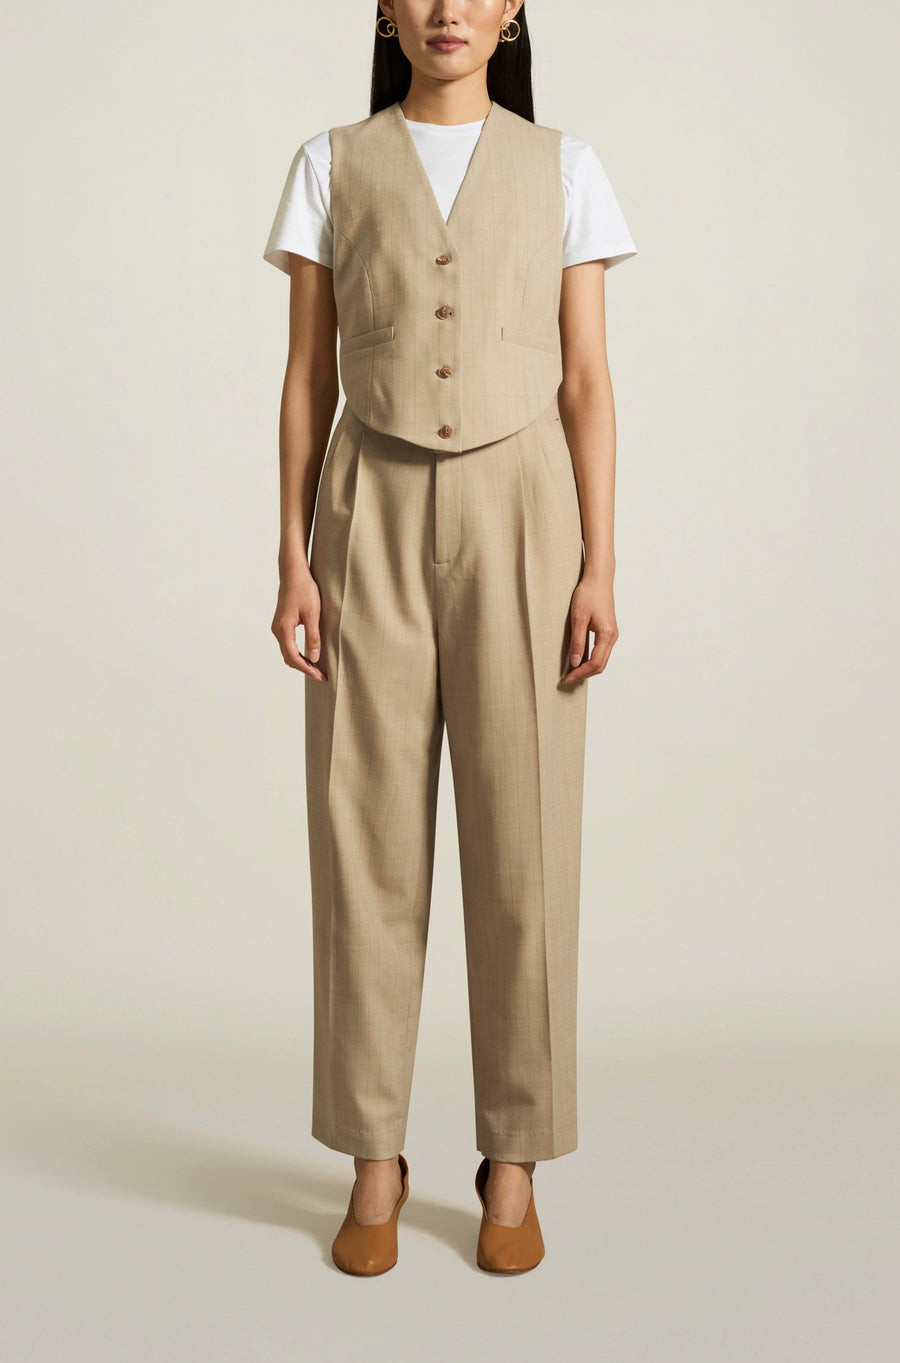 Tiffany Trouser in Beige Pinstripe Tropical Wool